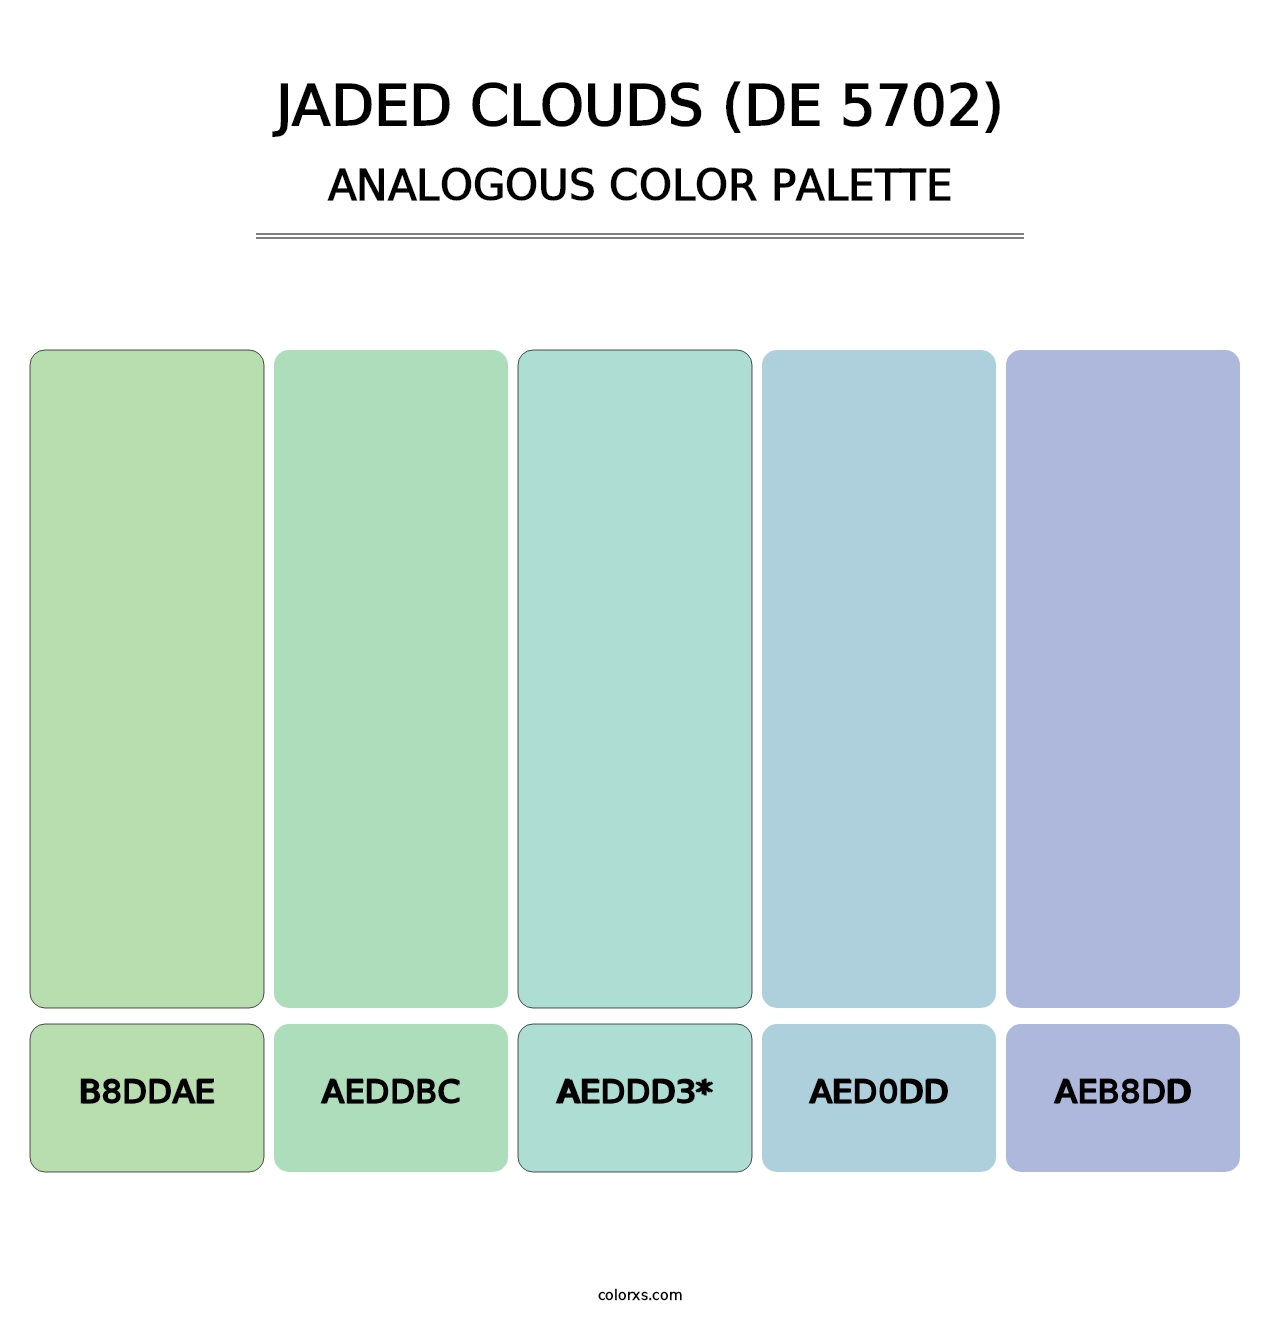 Jaded Clouds (DE 5702) - Analogous Color Palette